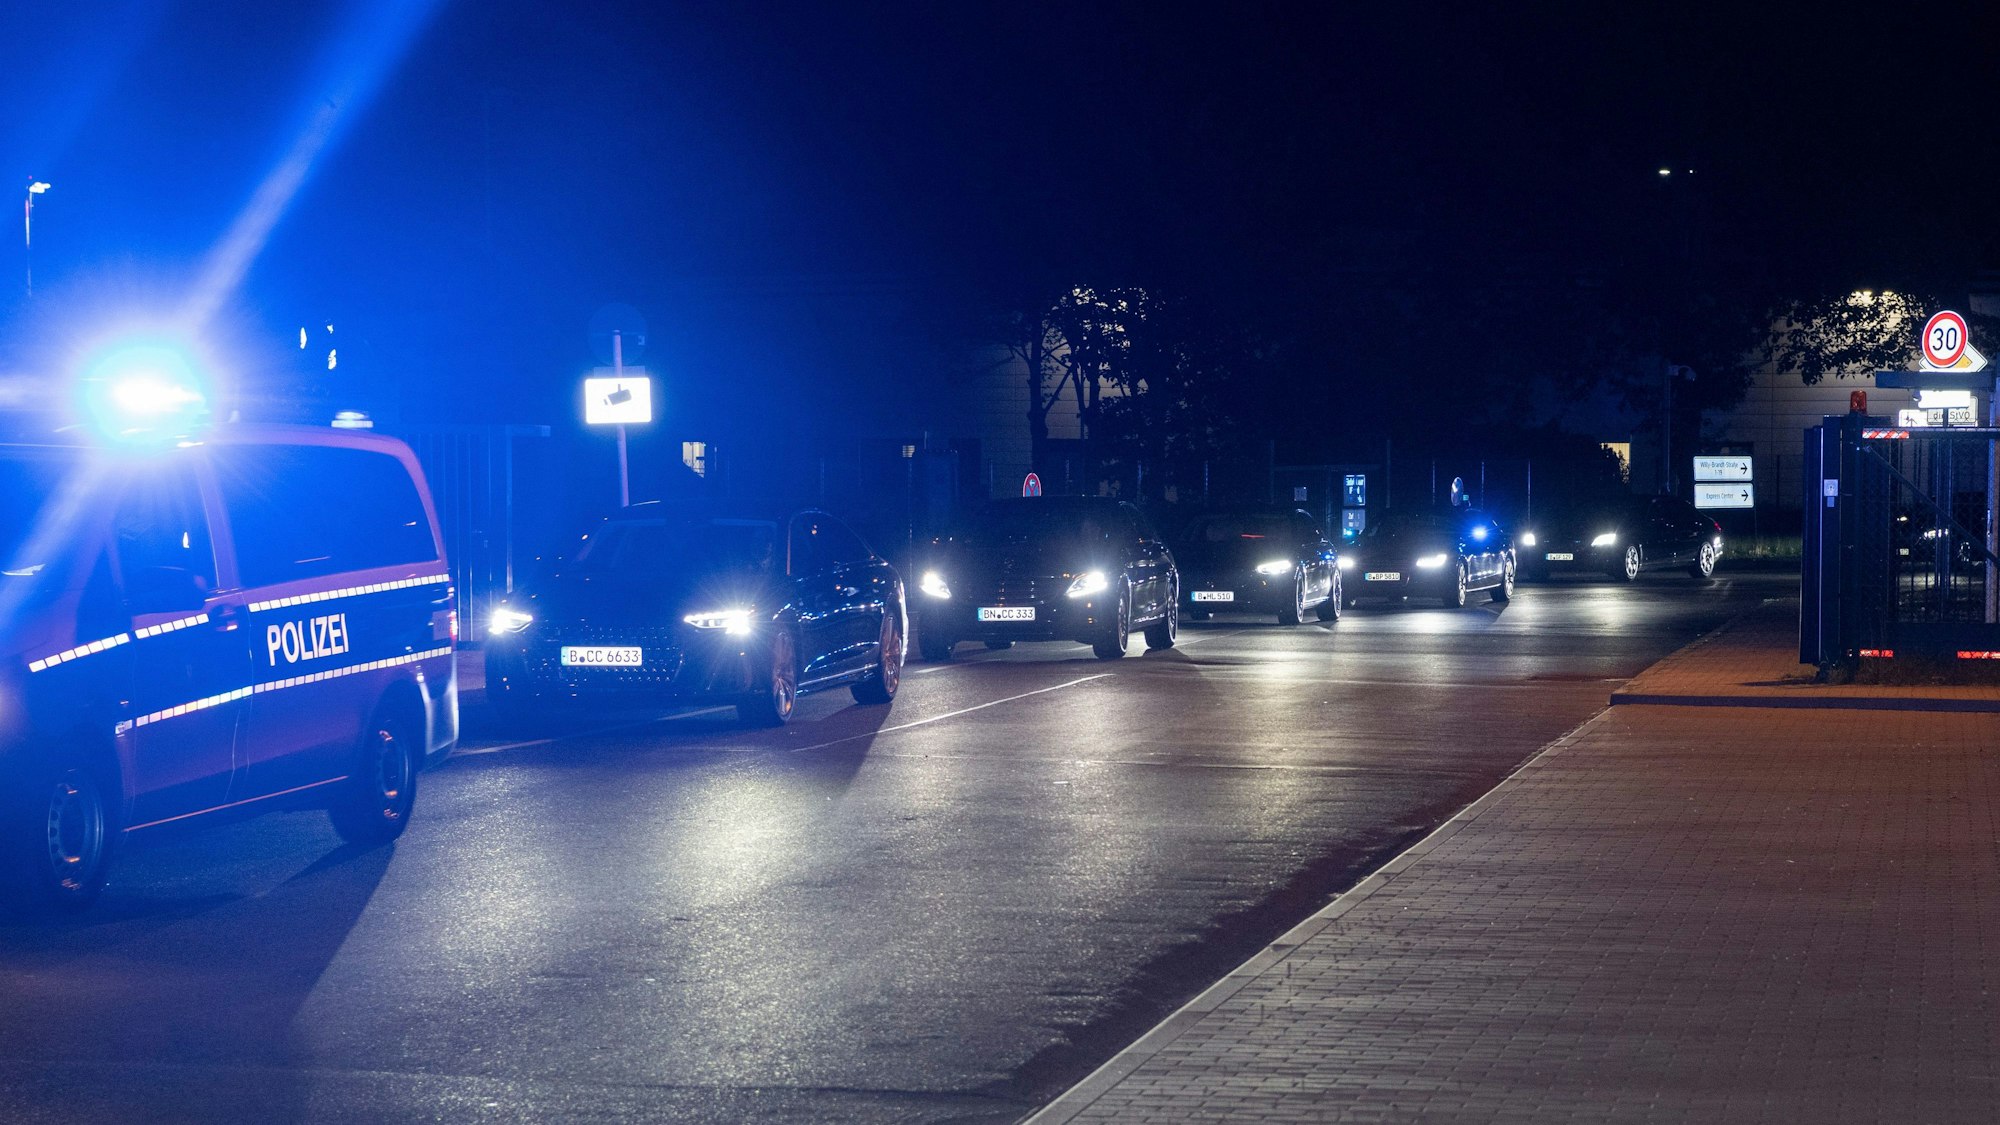 Ein Konvoi mit Einsatzfahrzeugen der Polizei, Limousinen und gepanzerten Fahrzeugen fährt auf einer Straße.